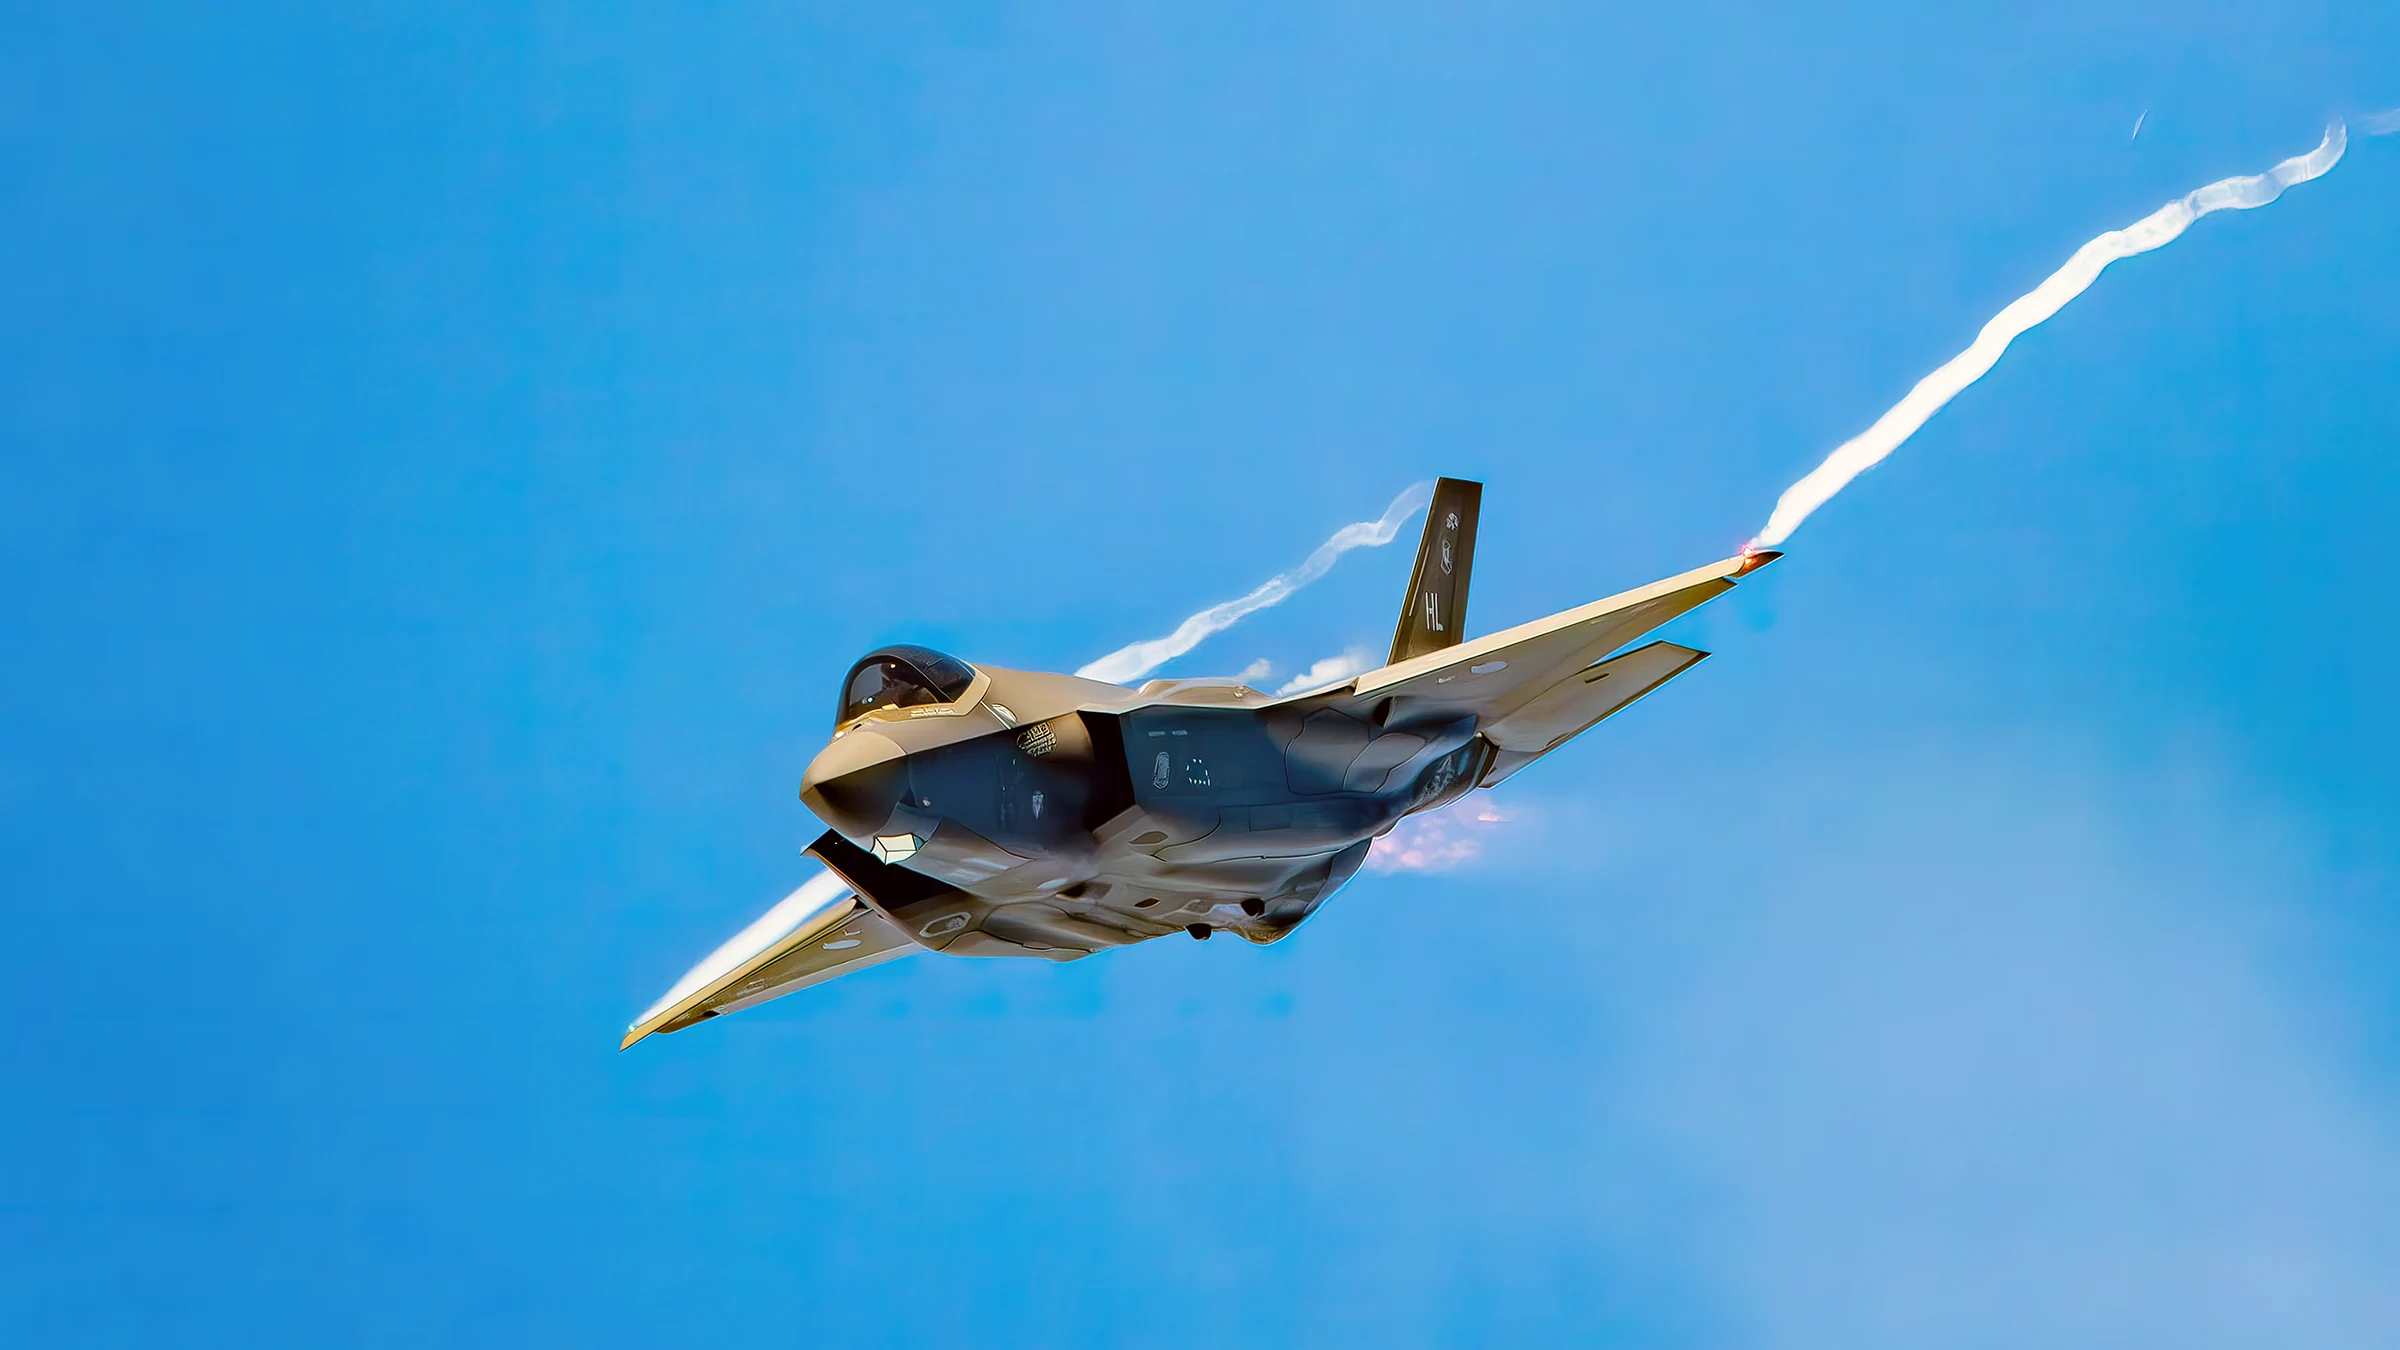 El caza furtivo F-35 ya puede lanzar bombas nucleares